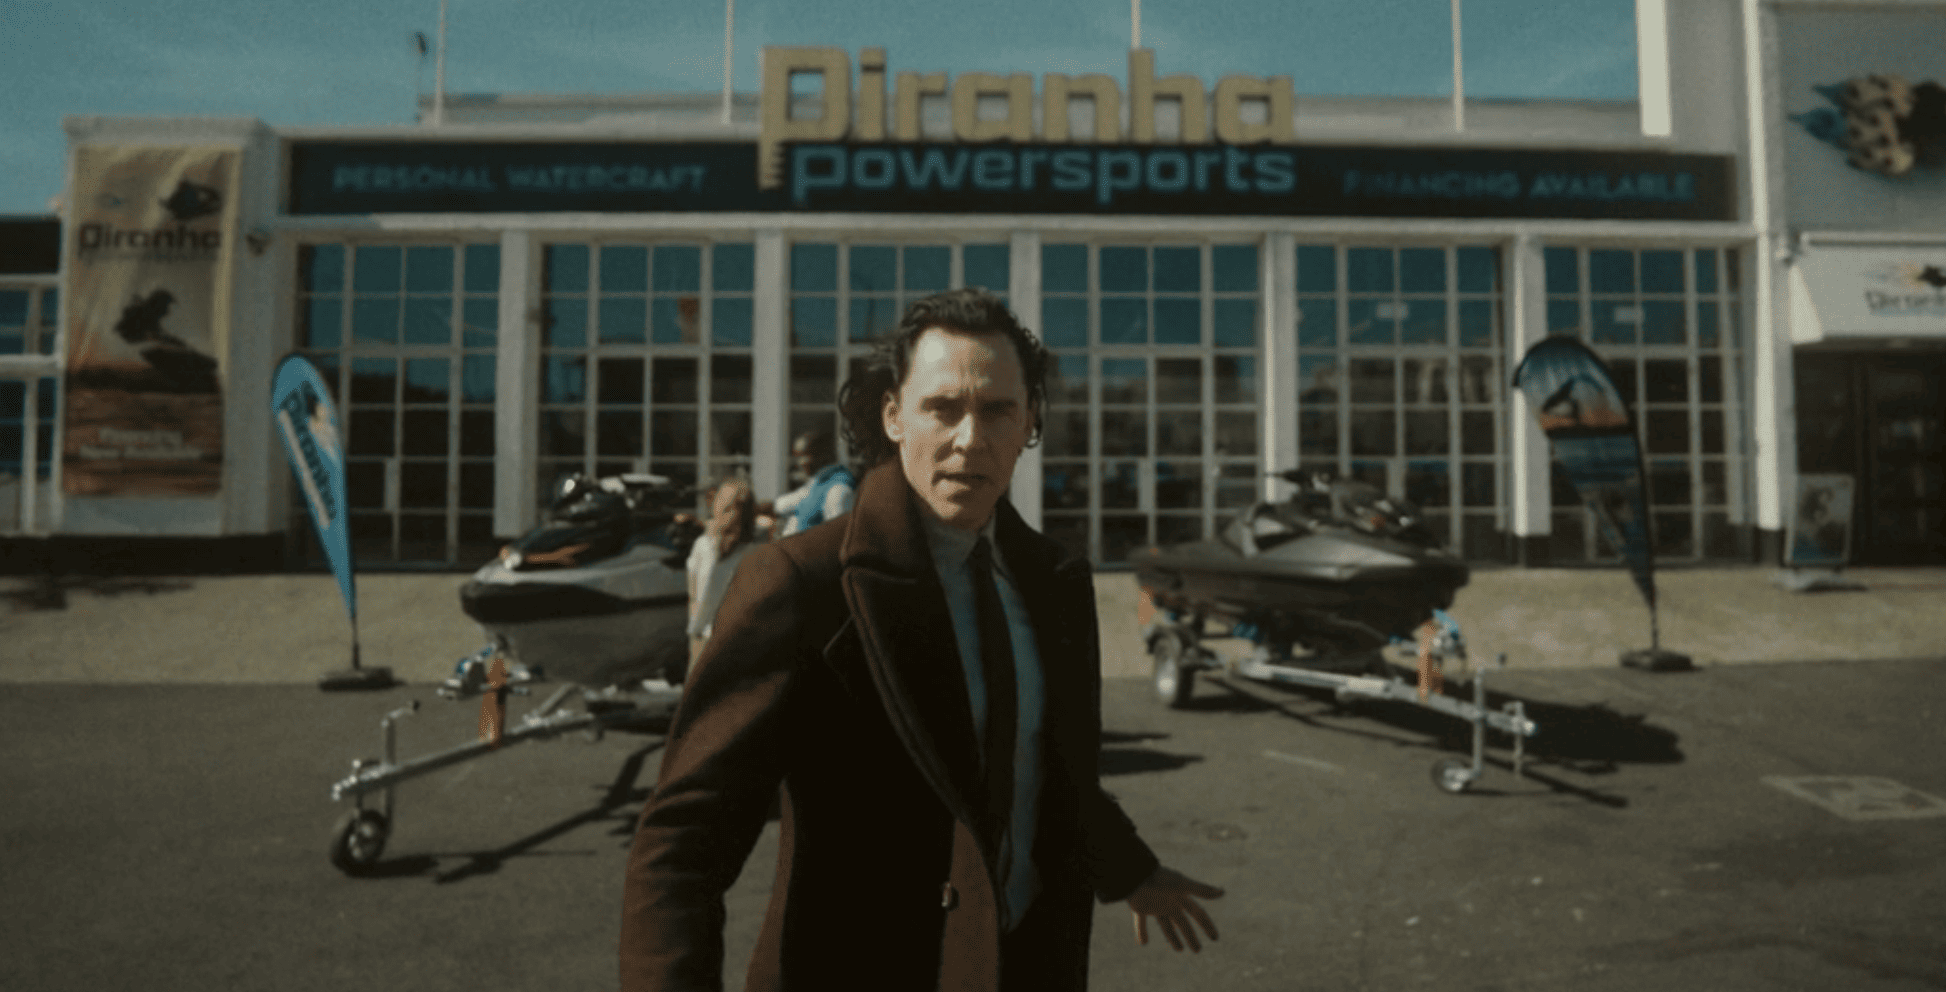 Loki Season 2 Episode 5 Breakdown Piranha Powersports